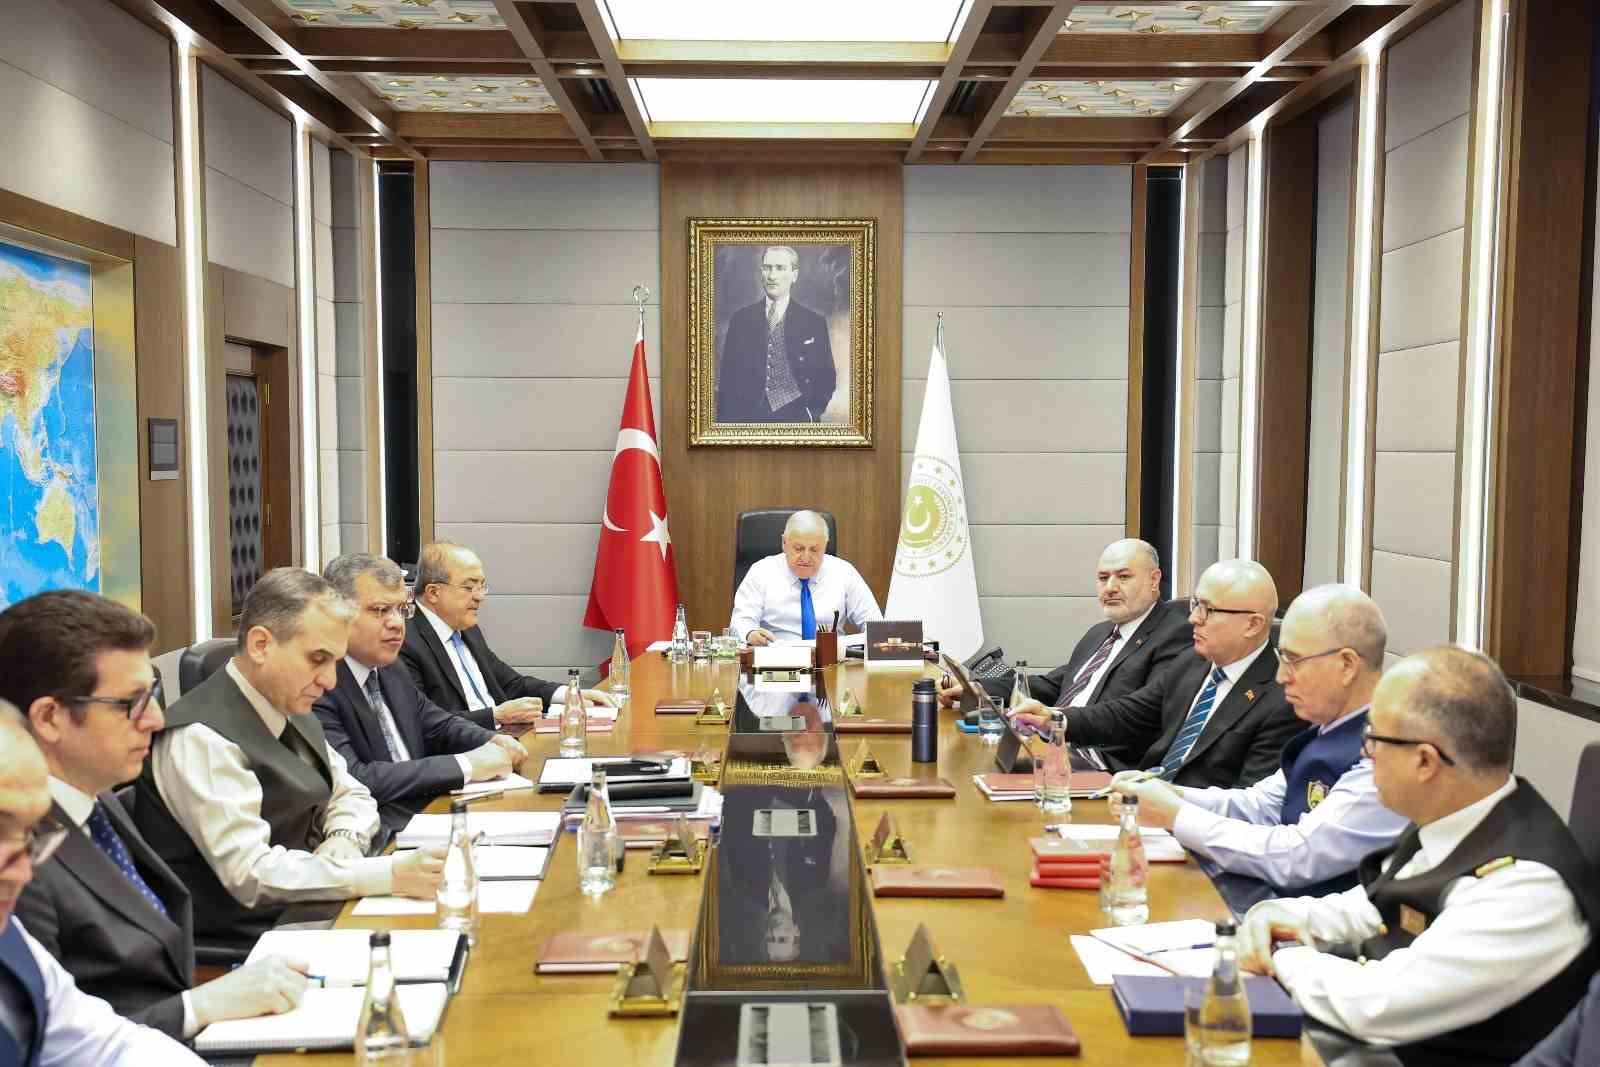 Bakan Güler, birlik komutanlarıyla birlikte telekonferans toplantısı gerçekleştirildi